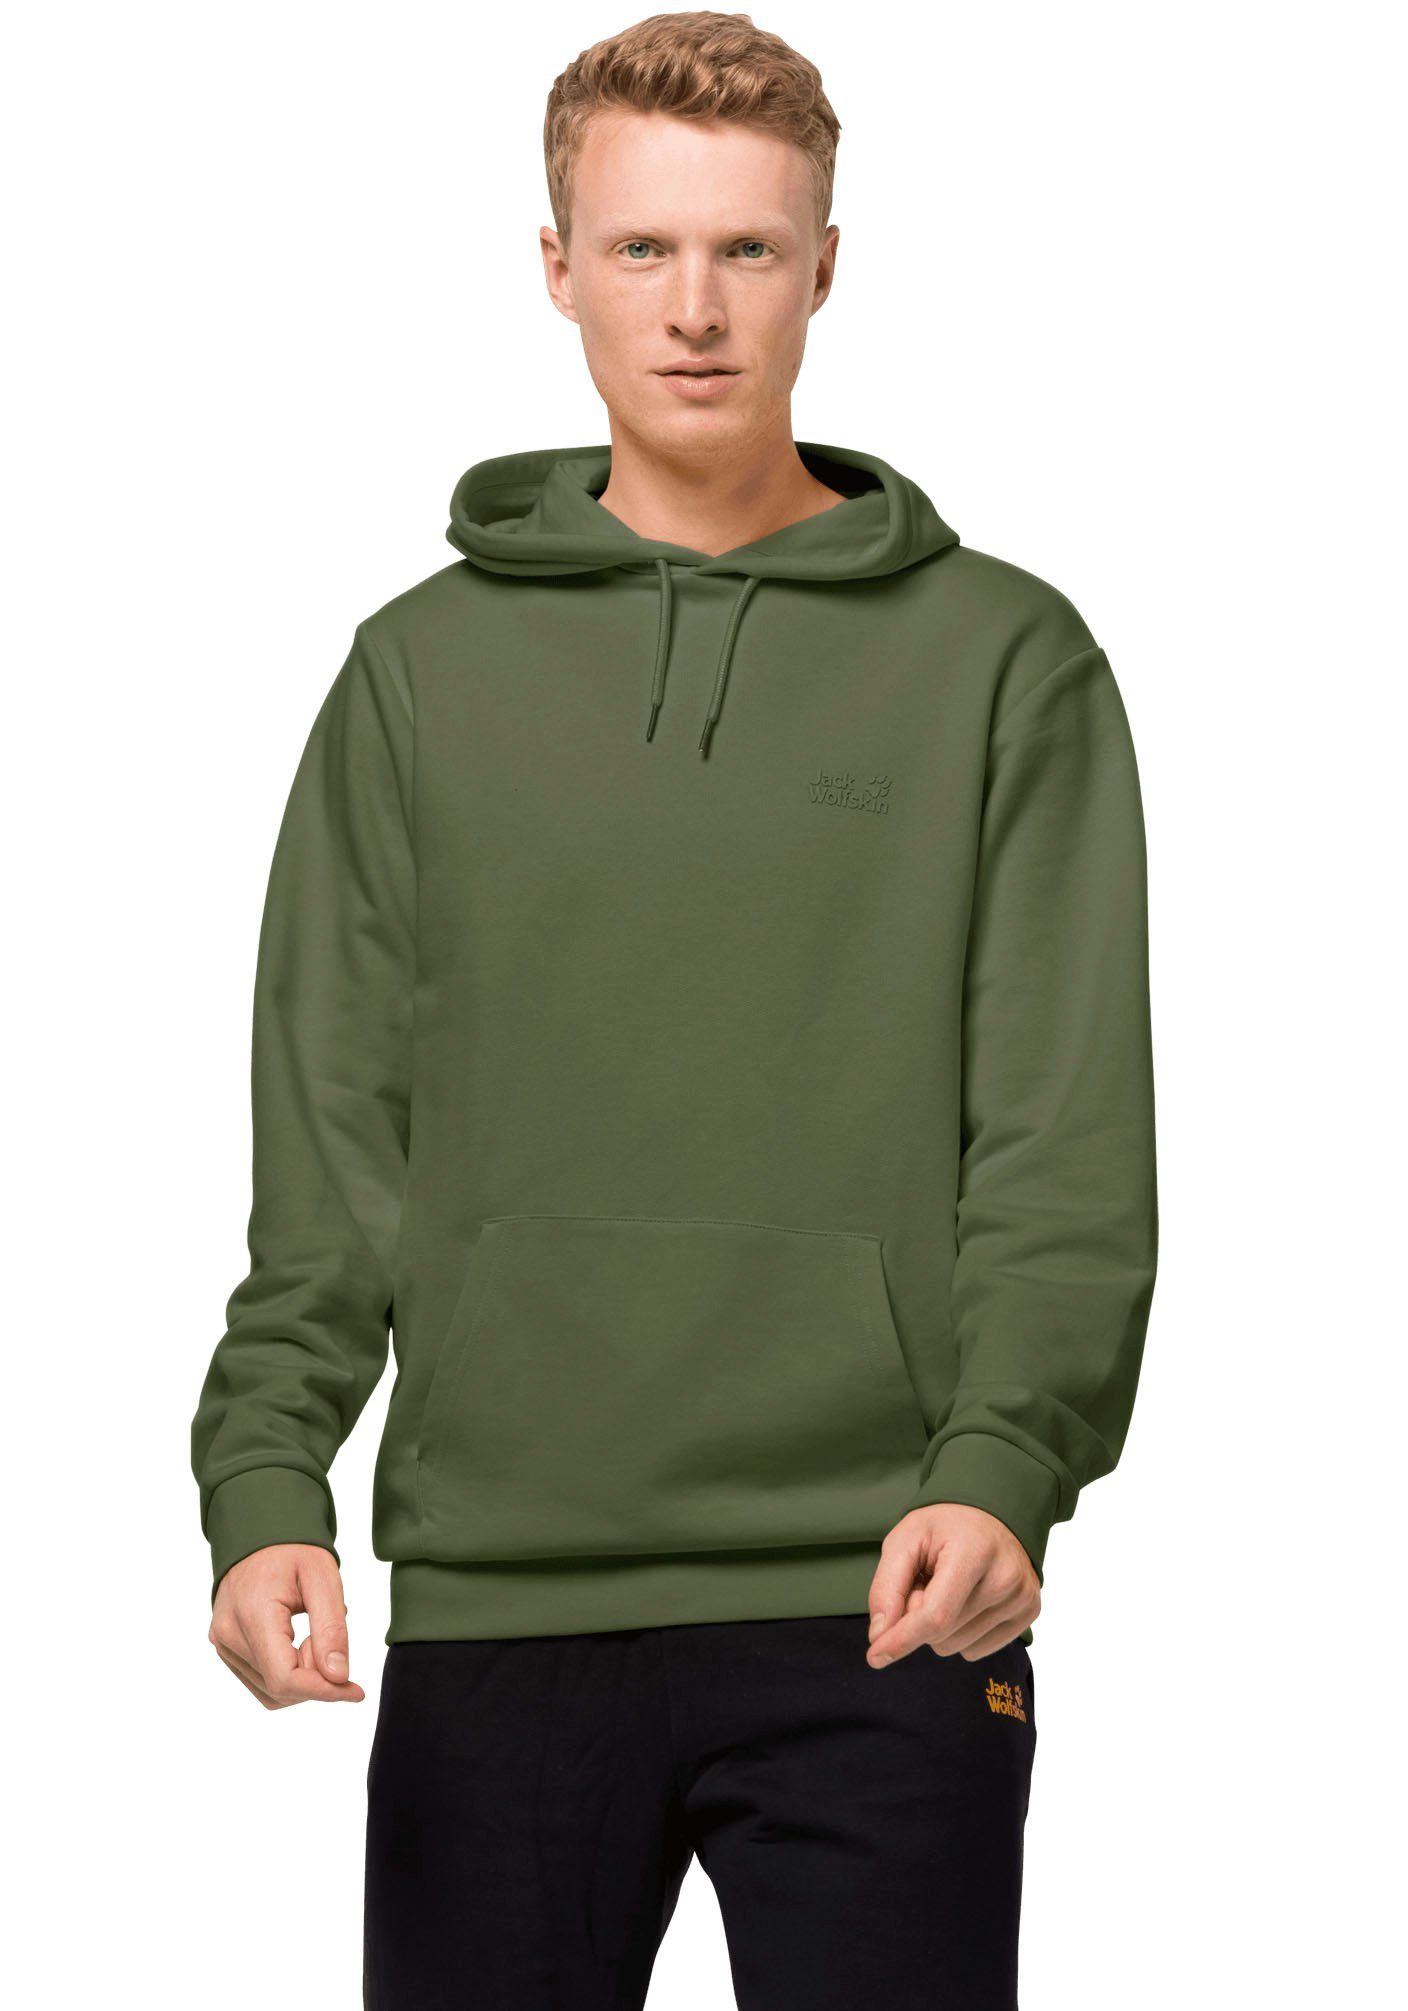 Jack Wolfskin Sweatshirts online kaufen | OTTO